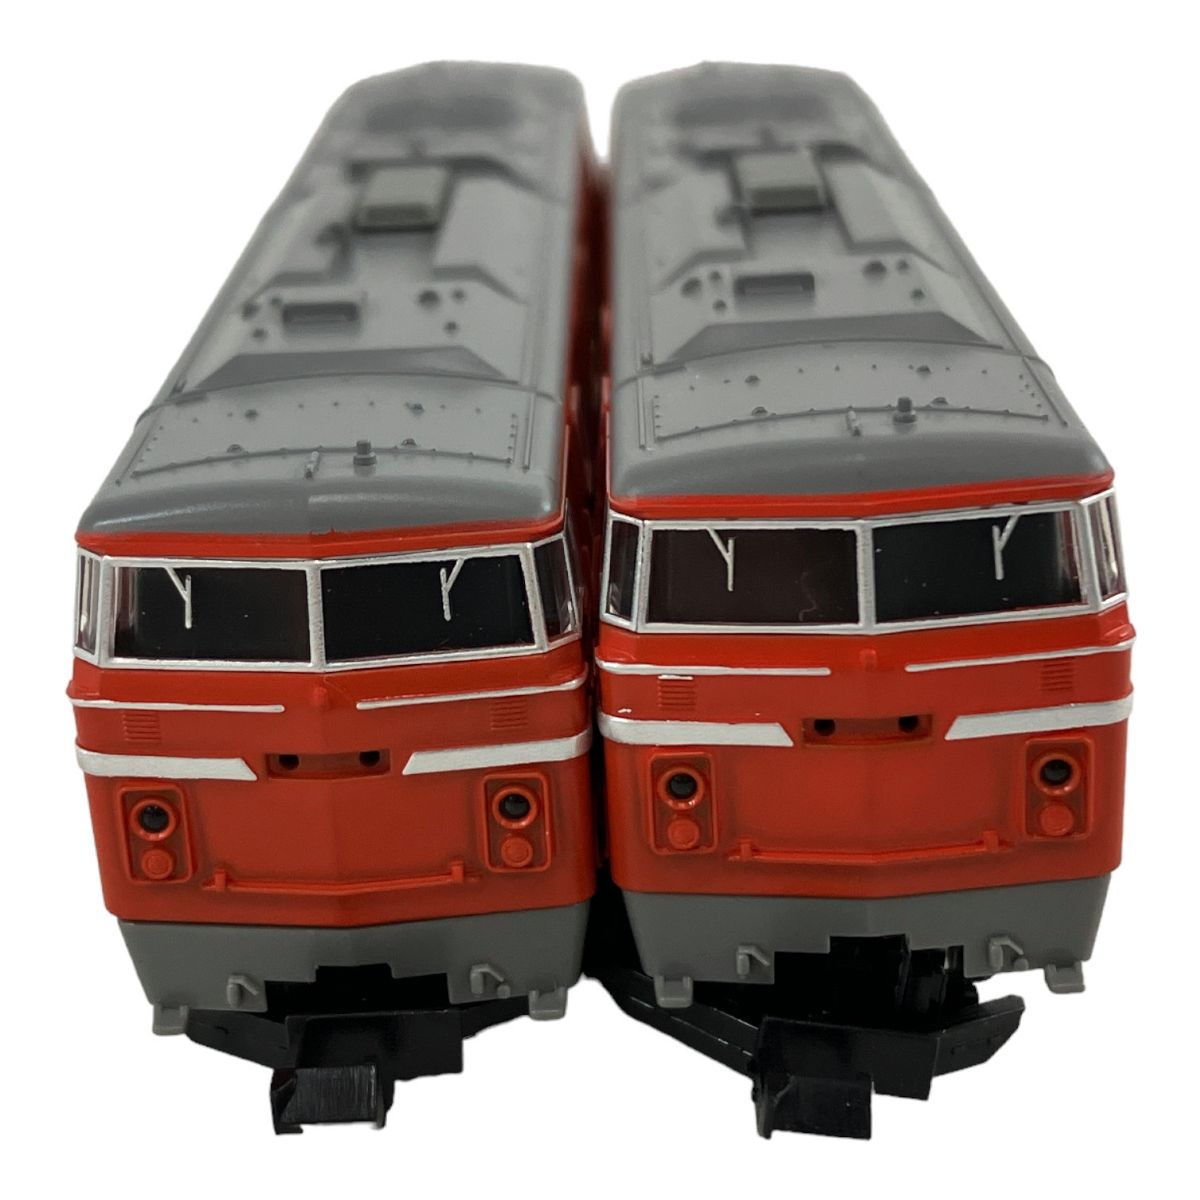 【動作保証】TOMIX 2203 国鉄DD54形 ディーゼル機関車 2両セット Nゲージ 鉄道模型  N8959578